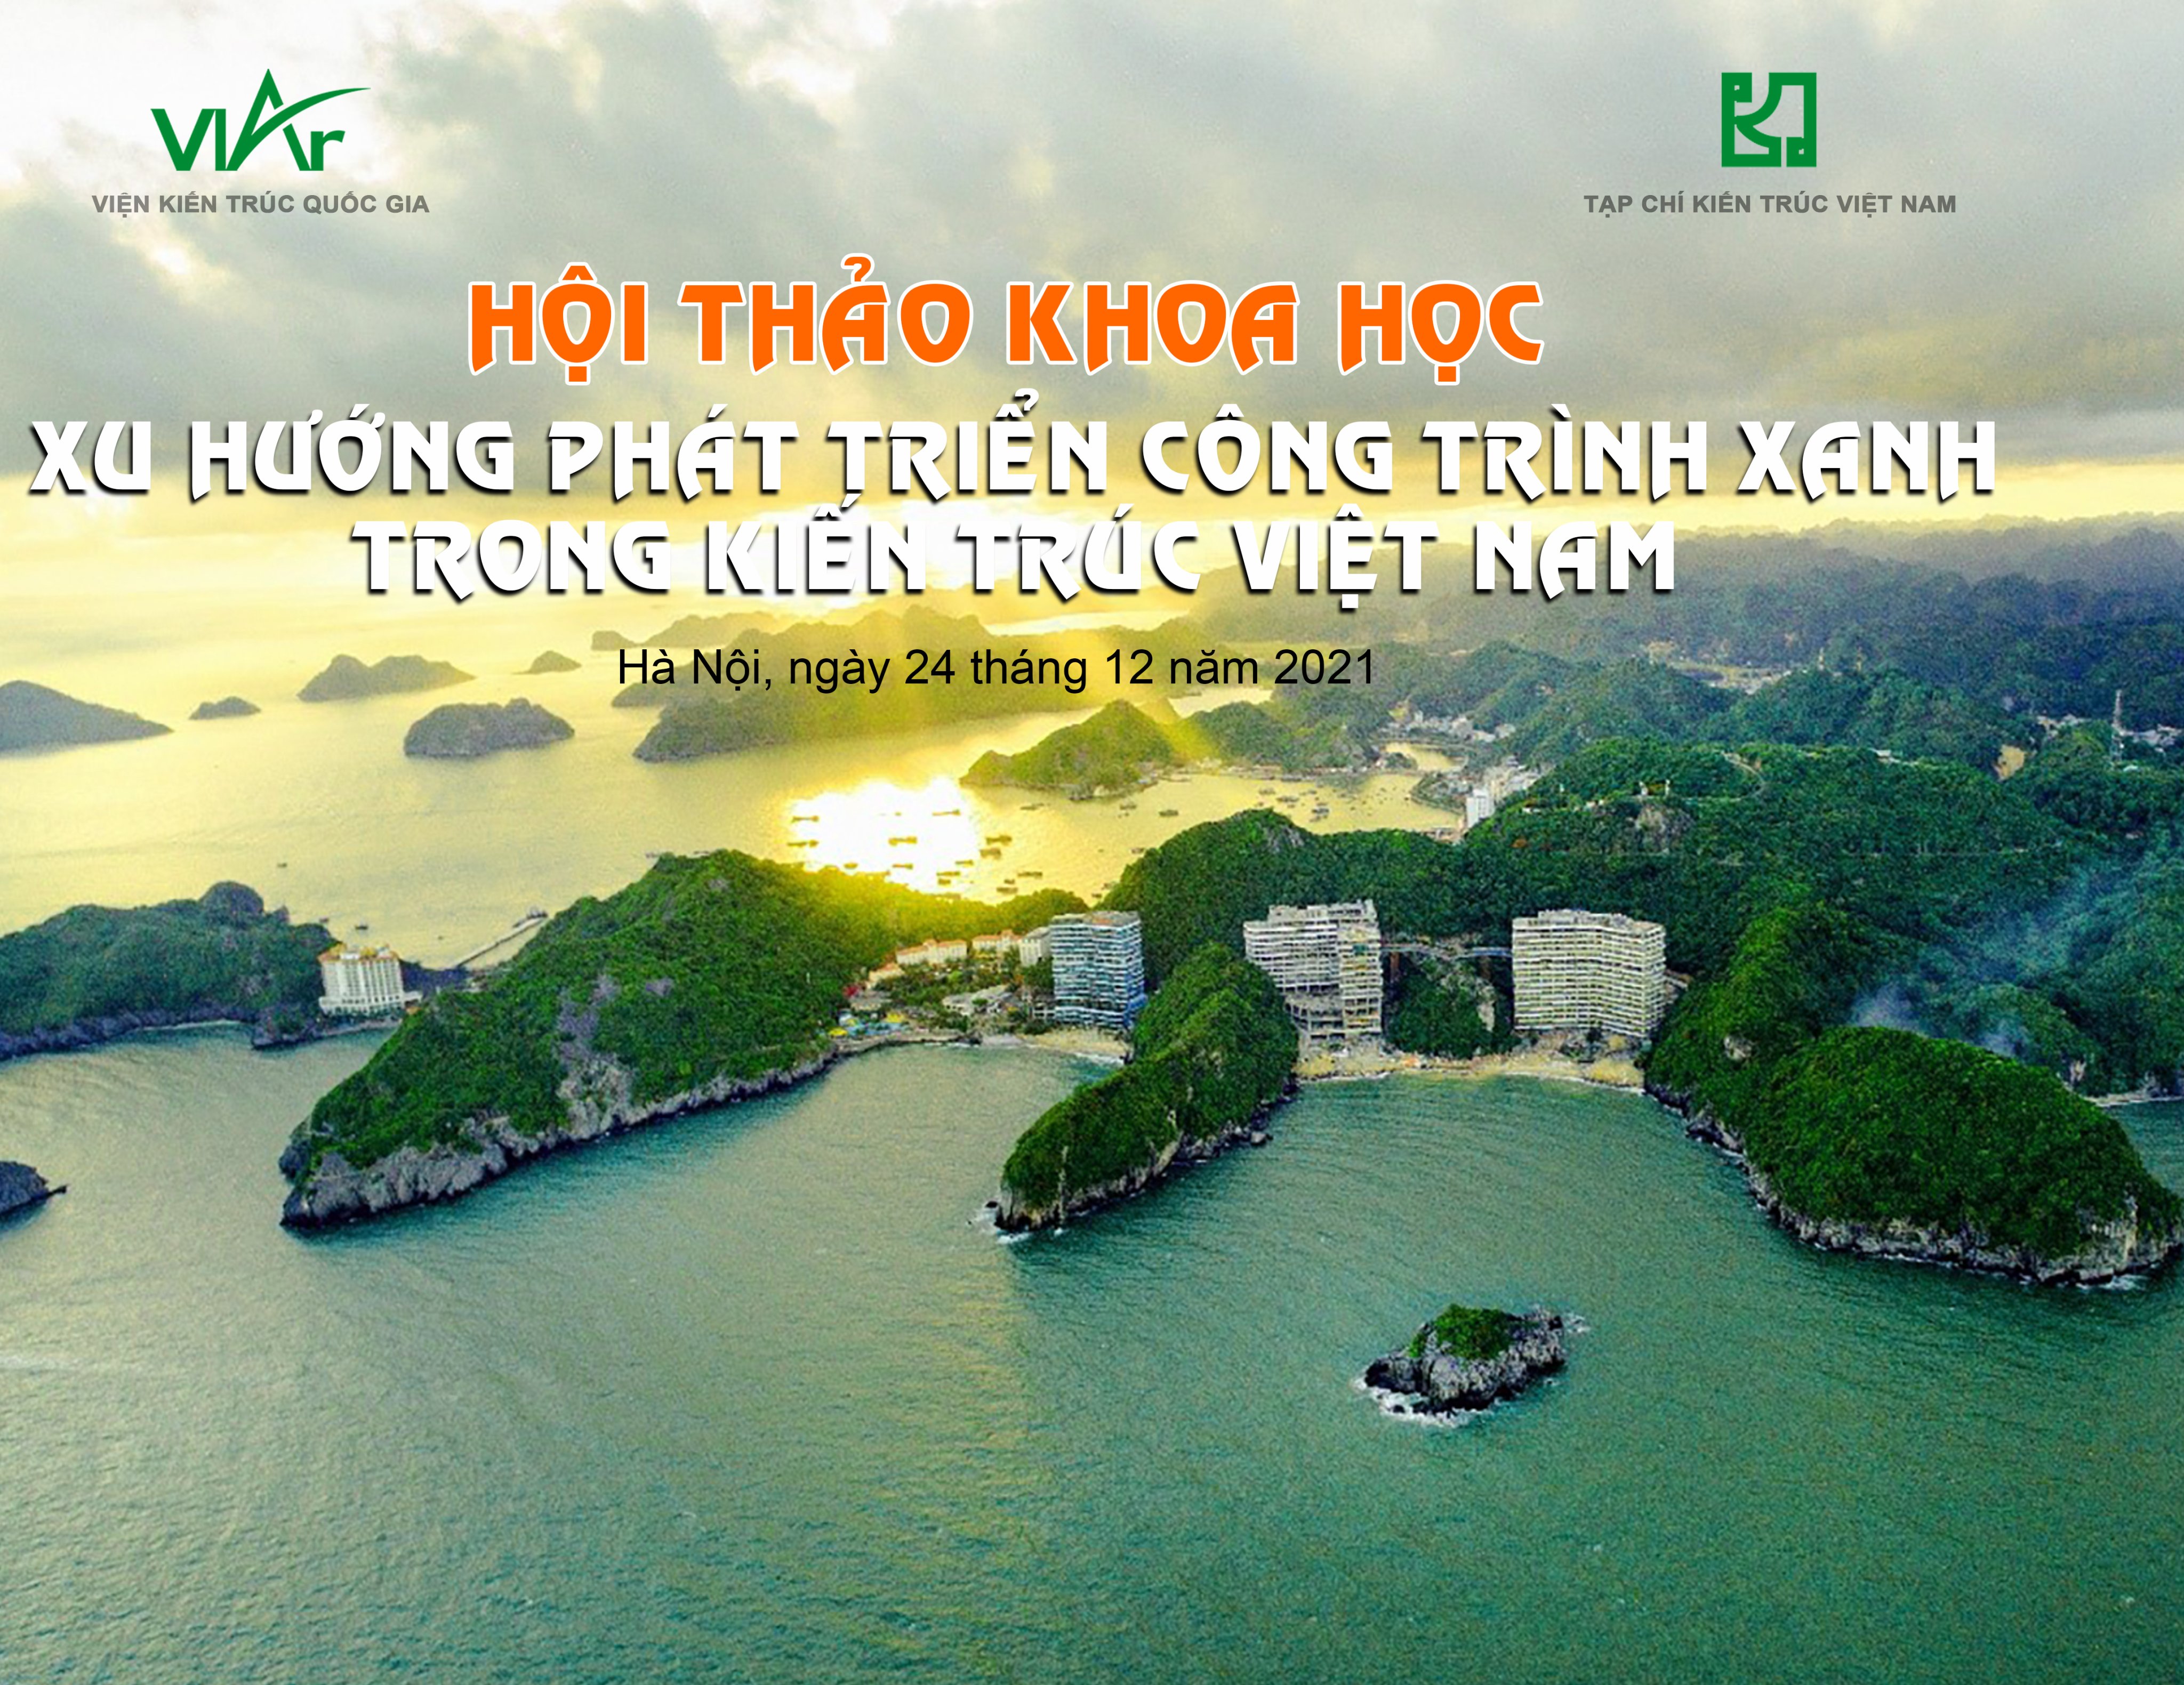 Triển lãm phát triển công trình xanh Việt Nam-10 năm nhìn lại